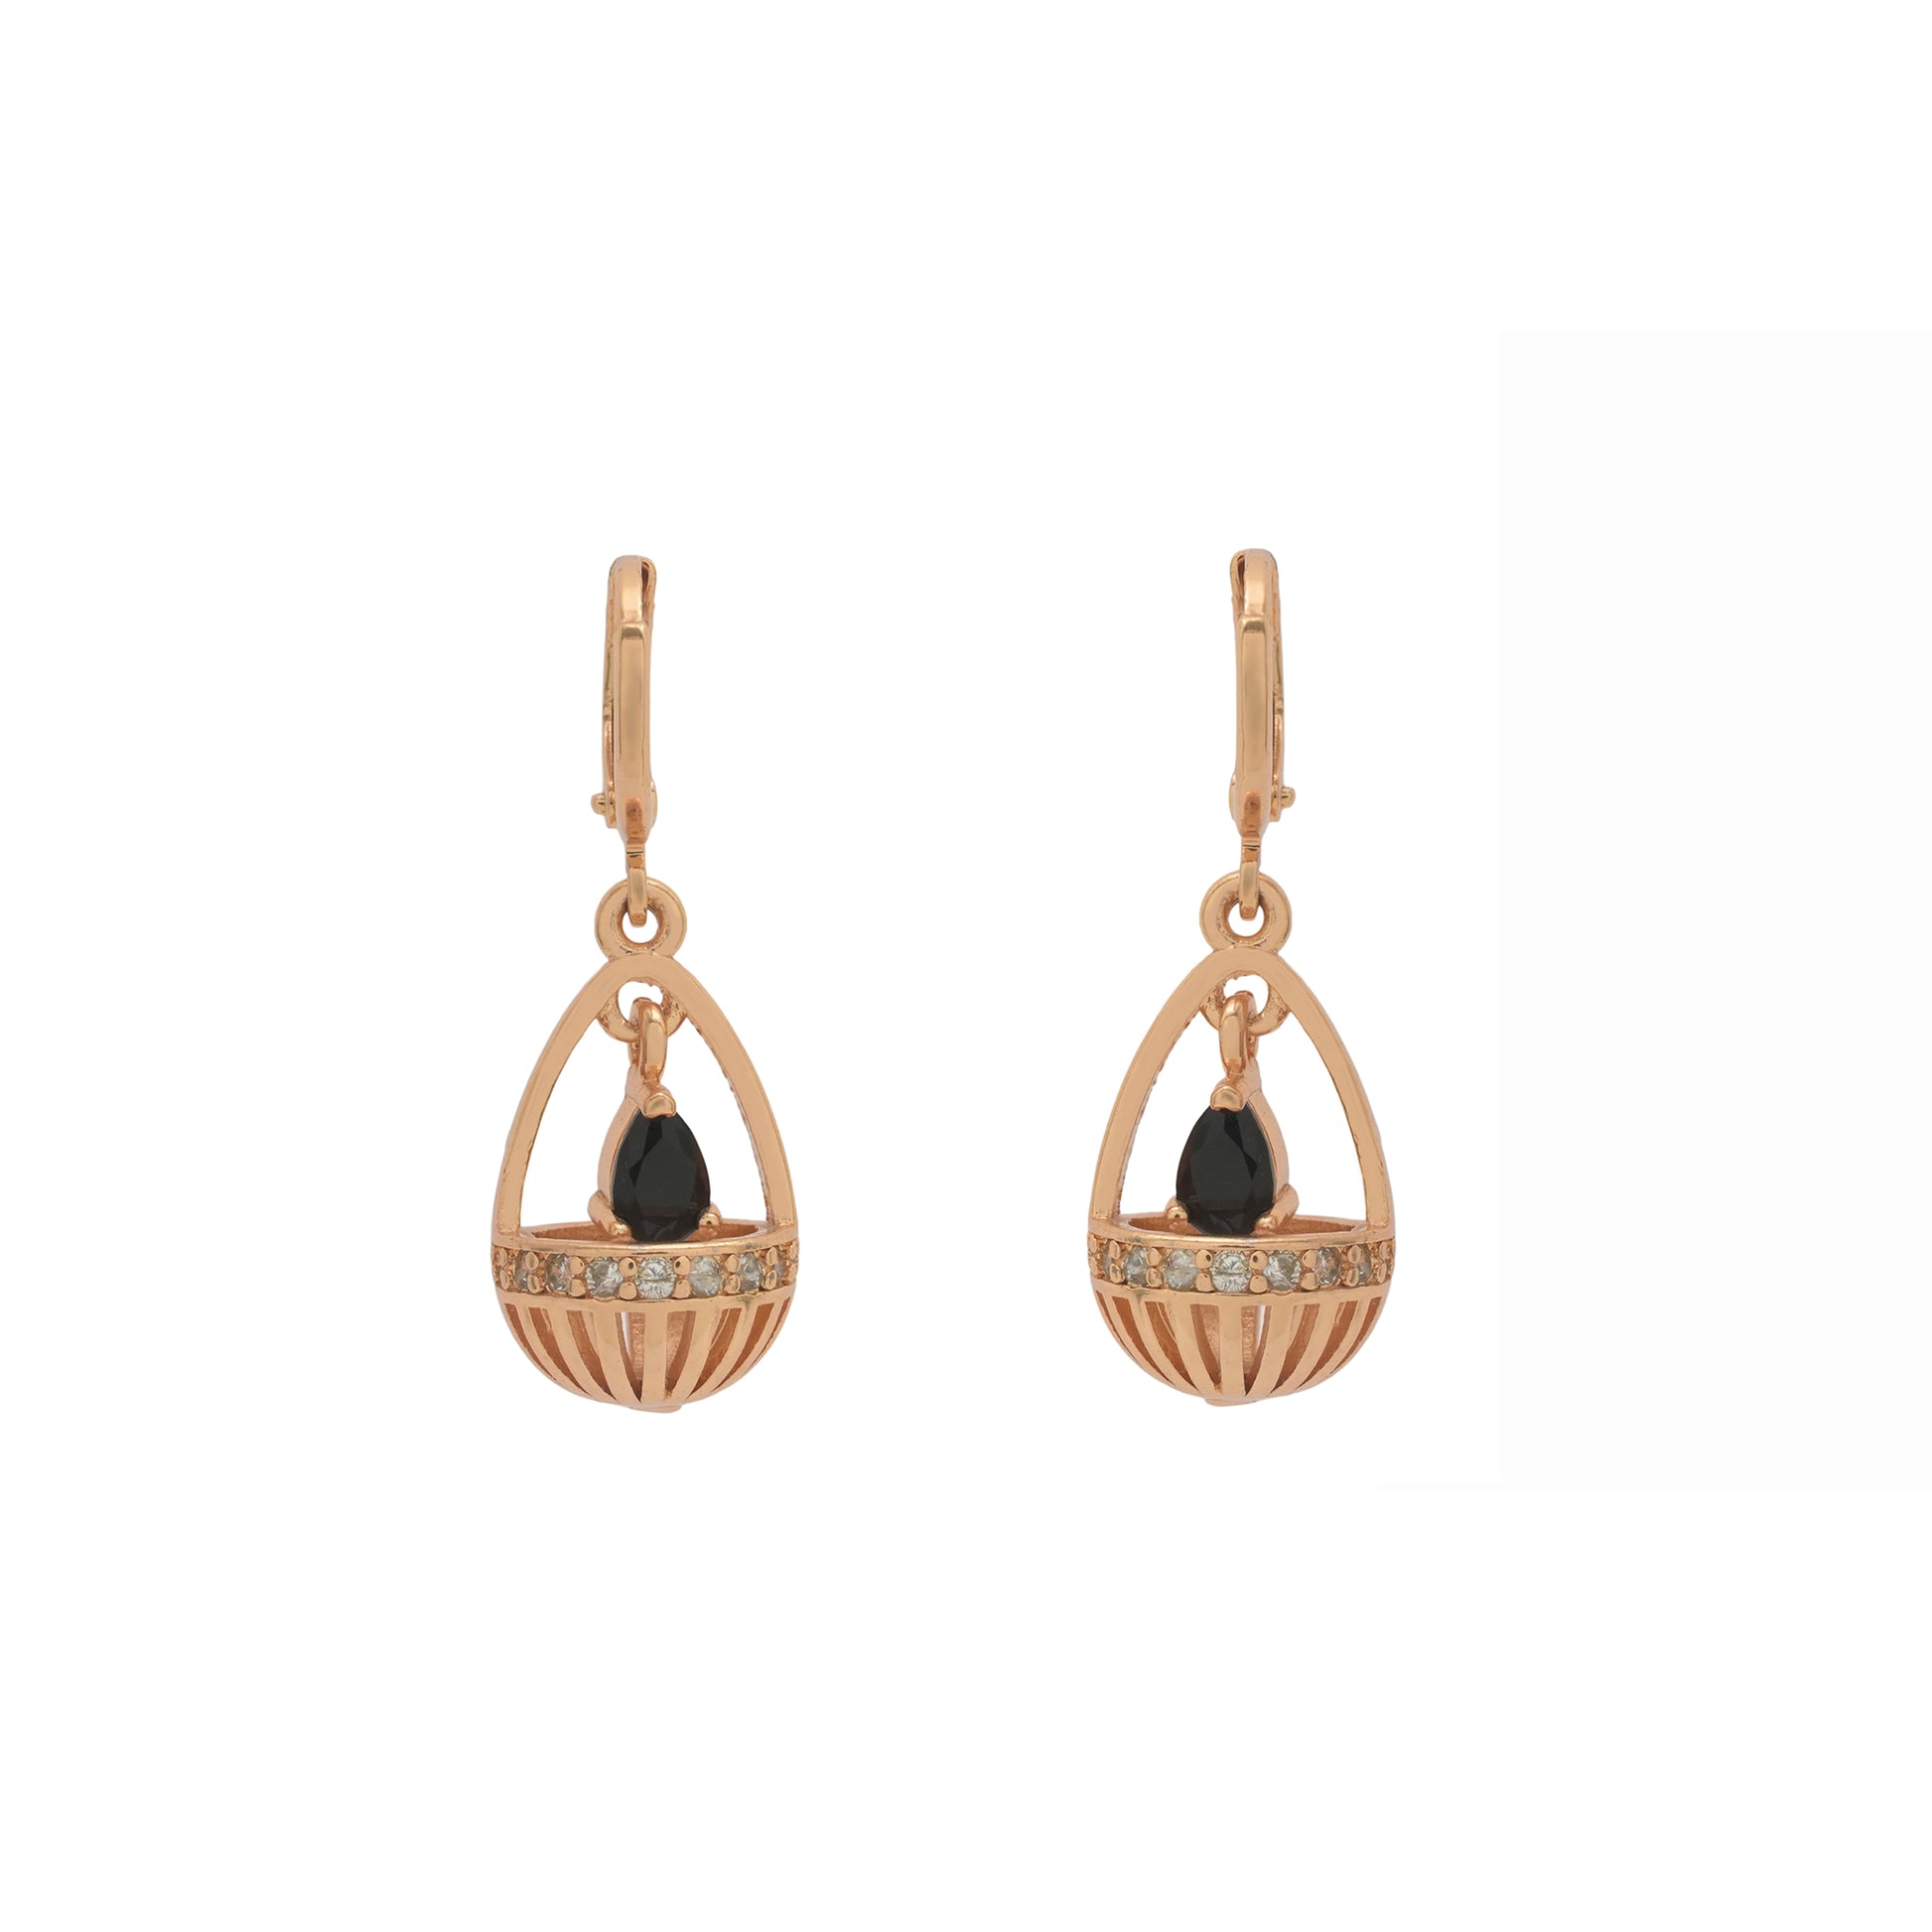 small earrings for girls